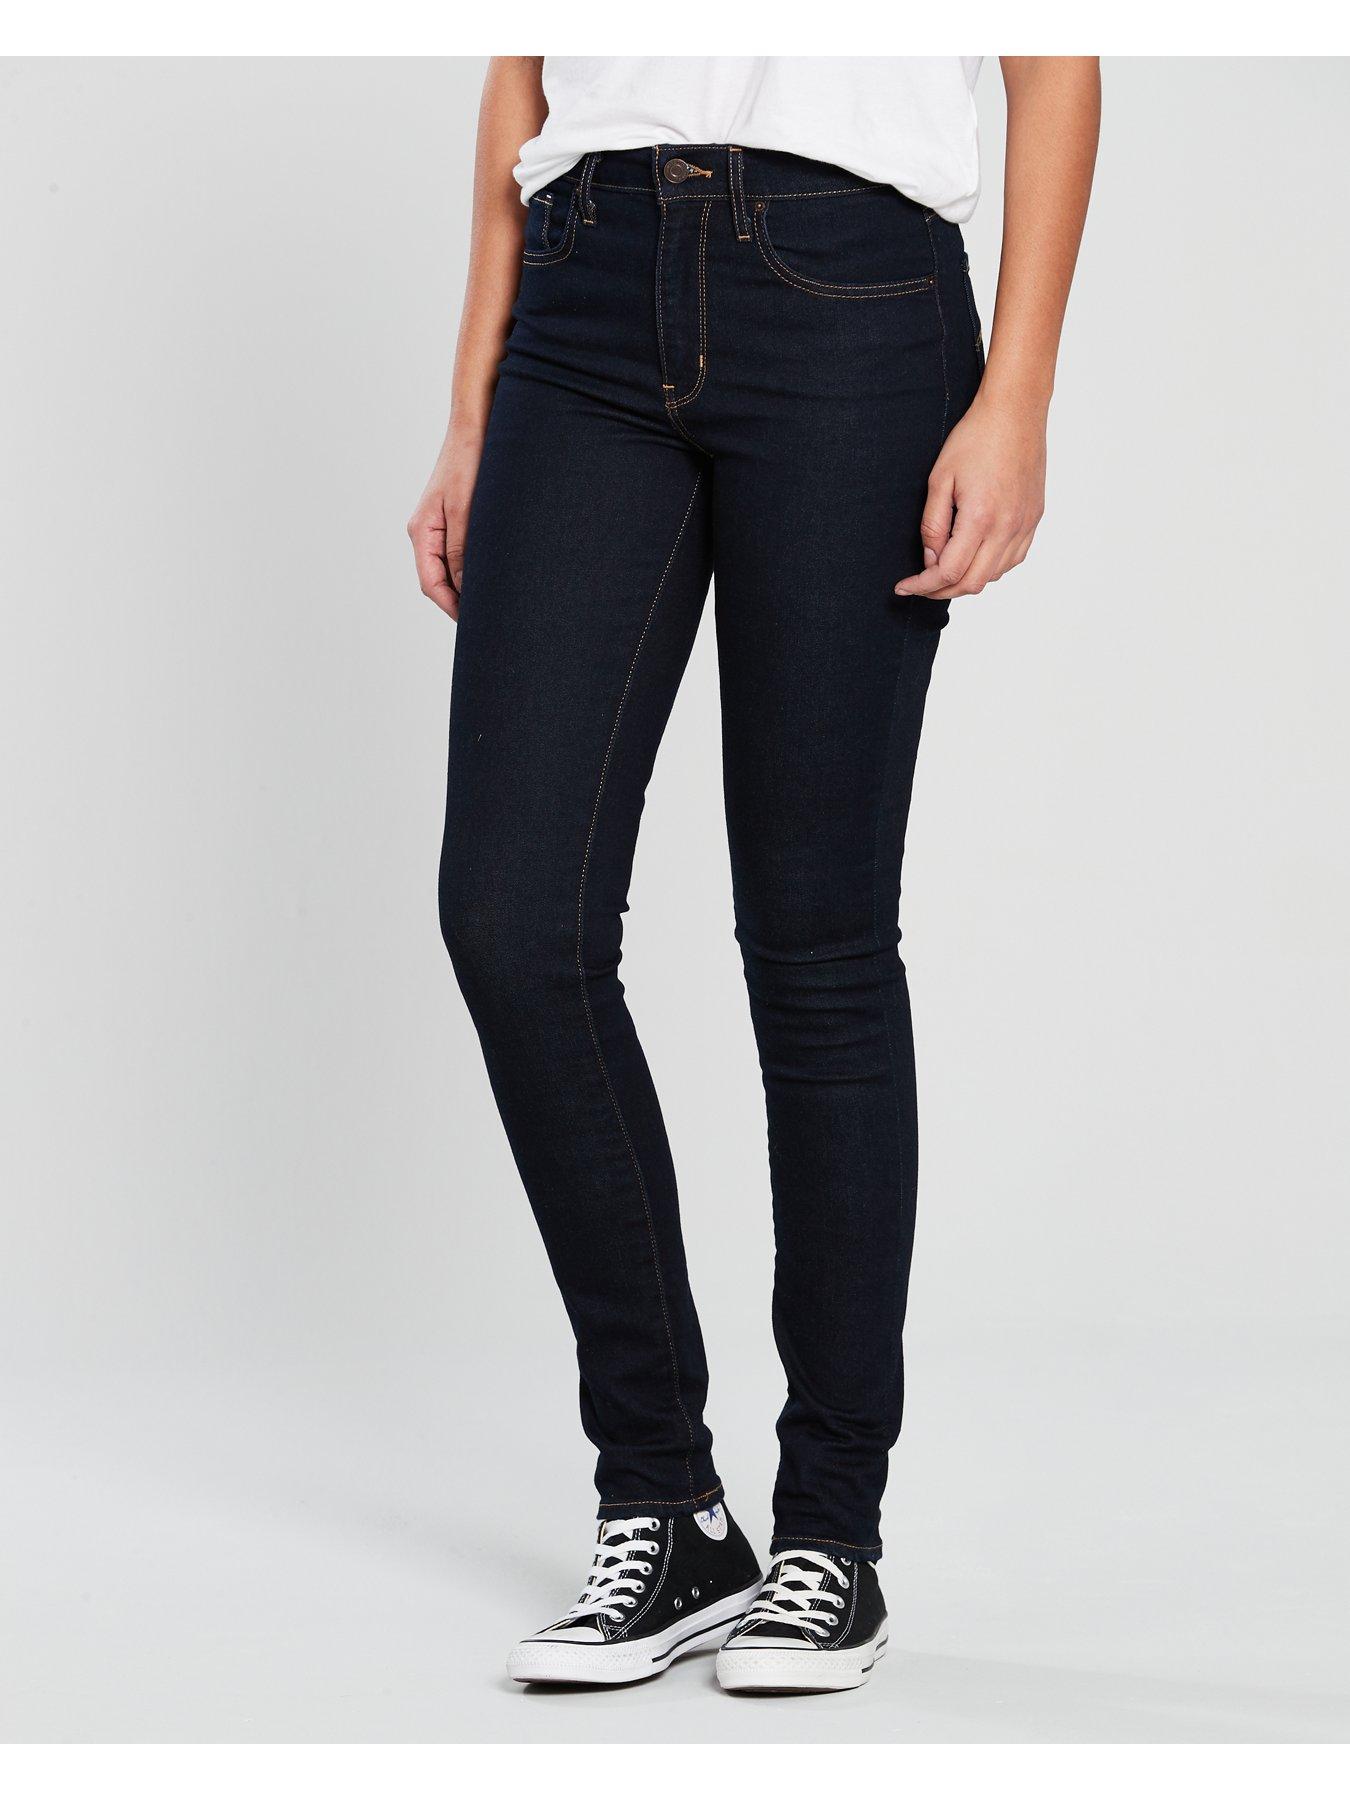 womens levis jeans uk